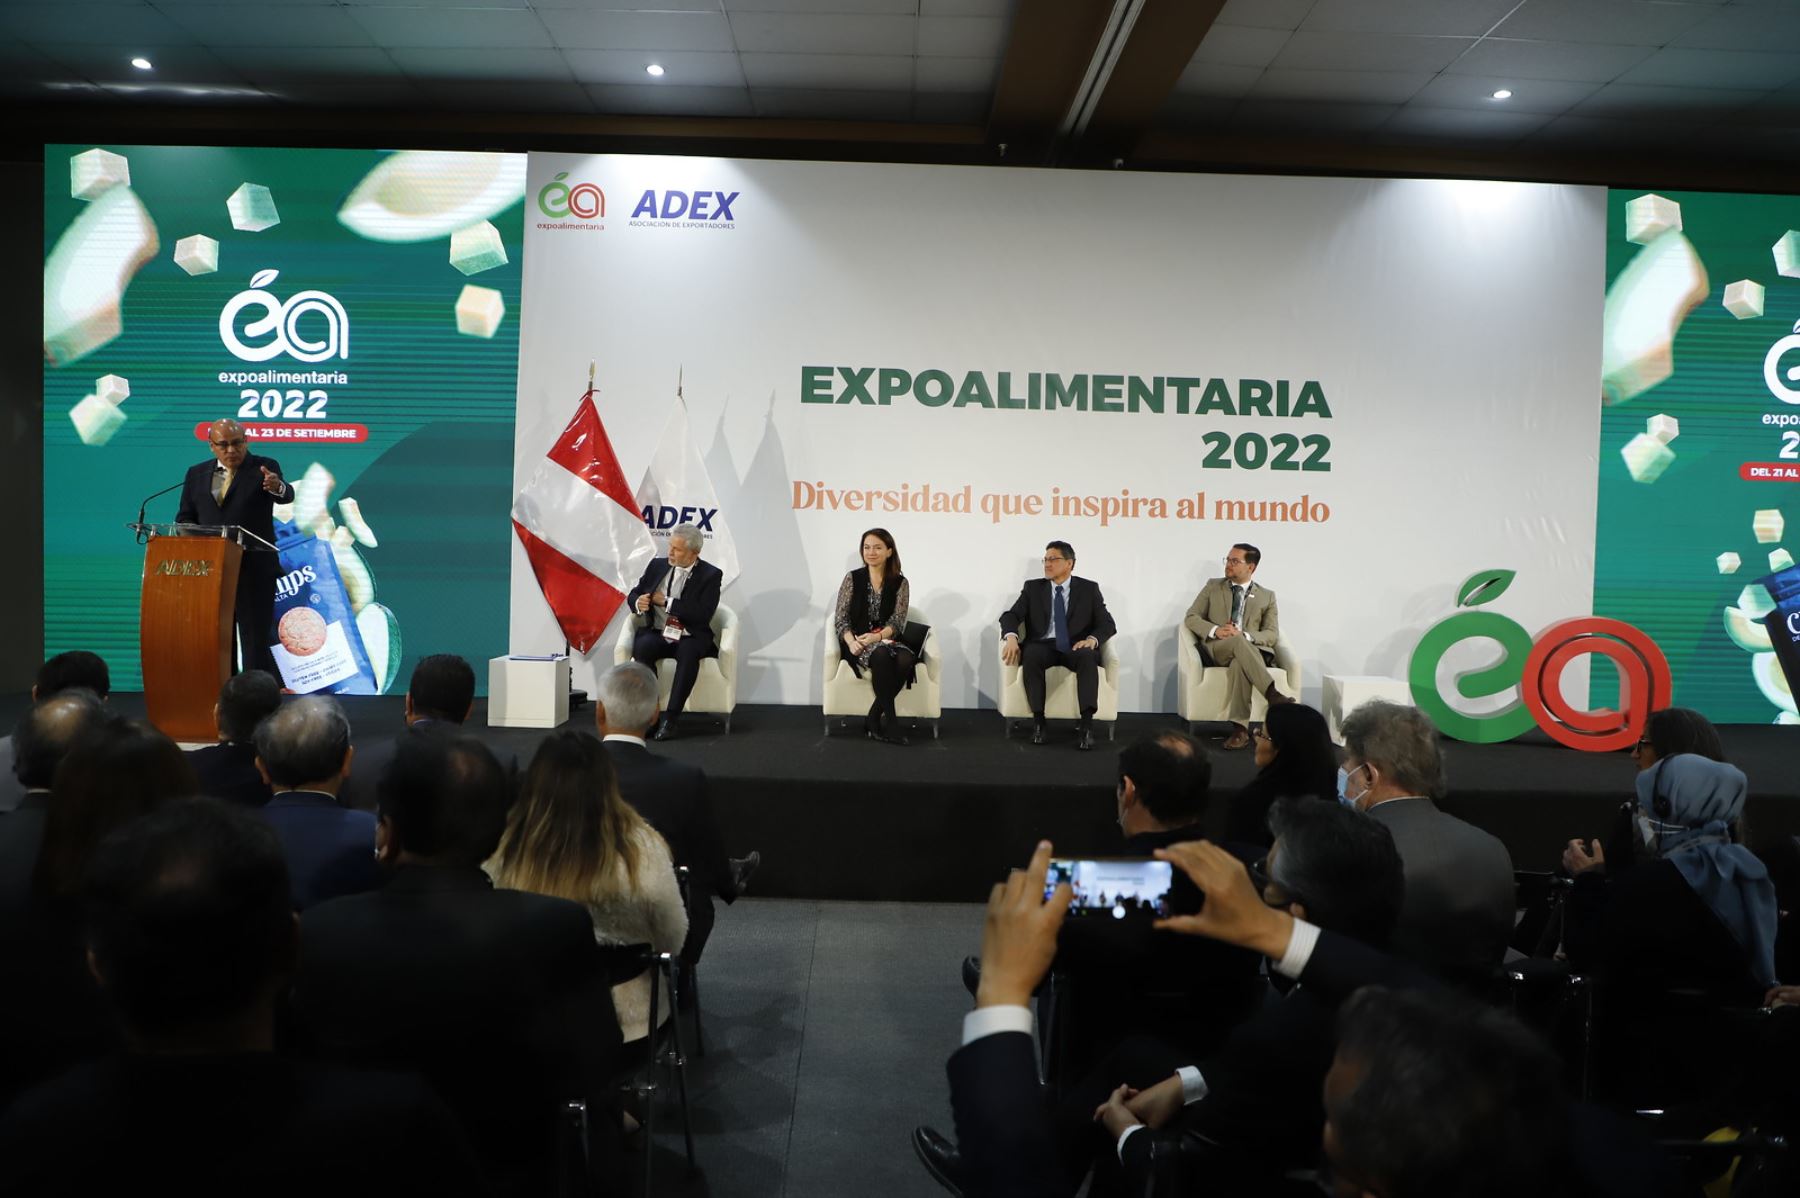 La Asociación de Exportadores (ADEX) inaugura la décimo cuarta edición de la Expoalimentaria (EA), la feria de alimentos y bebidas más importante de la región, que este año retornó su formato presencial.
Foto: Mincetur